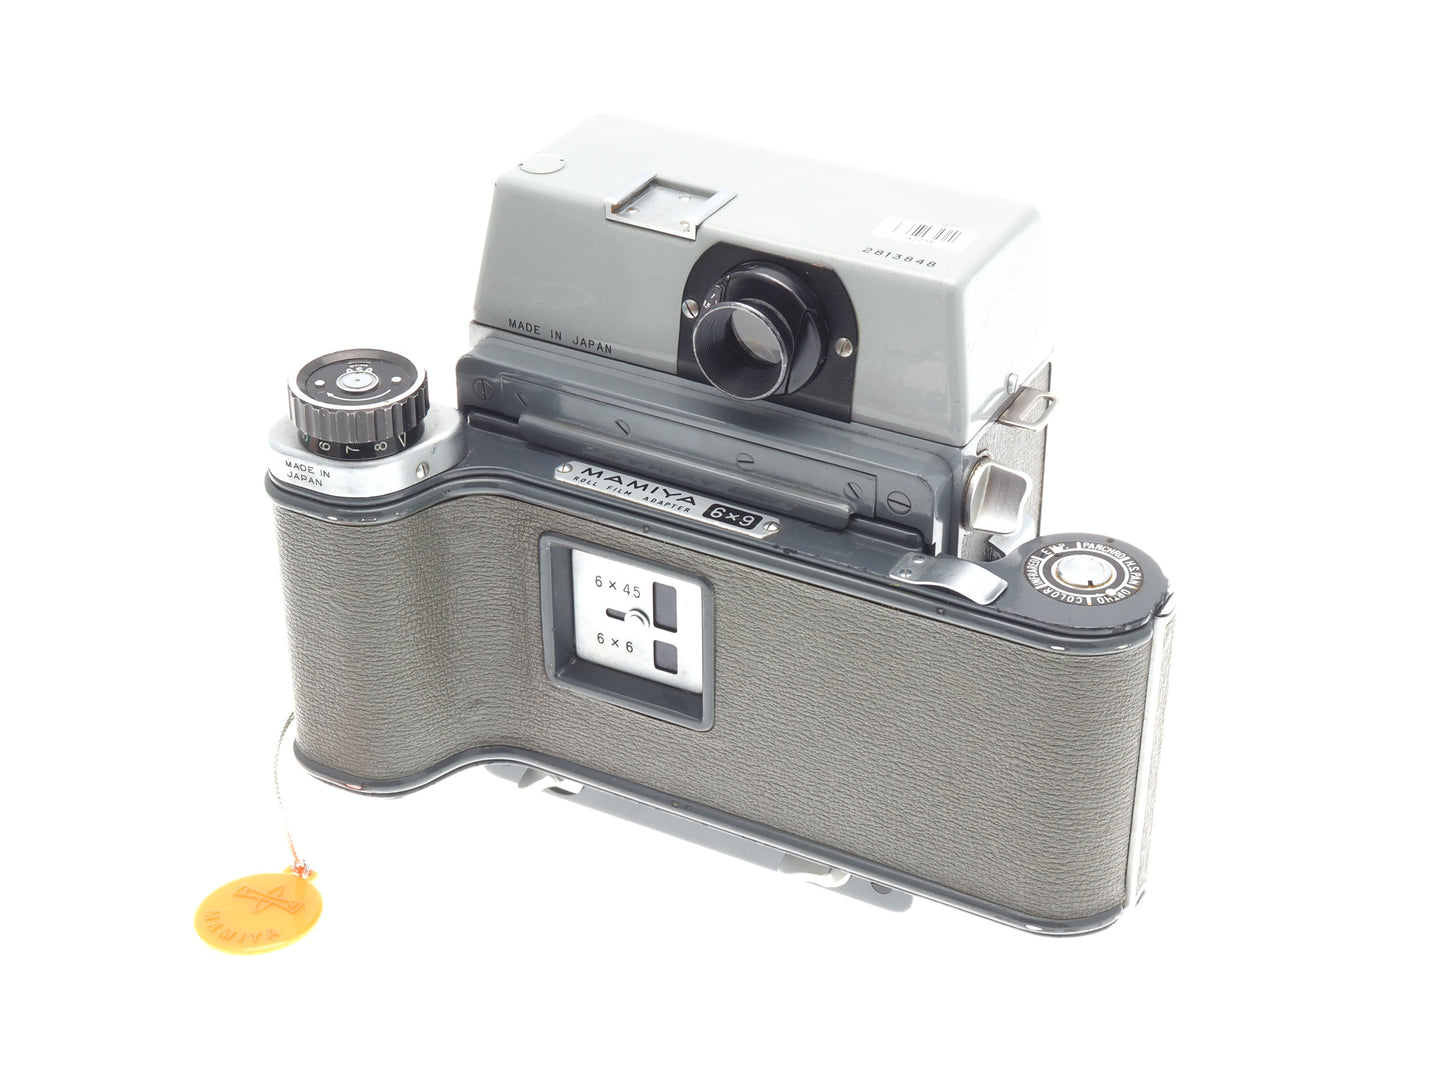 Mamiya Press + 90mm f3.5 Sekor + 6x9 Roll Film Adapter